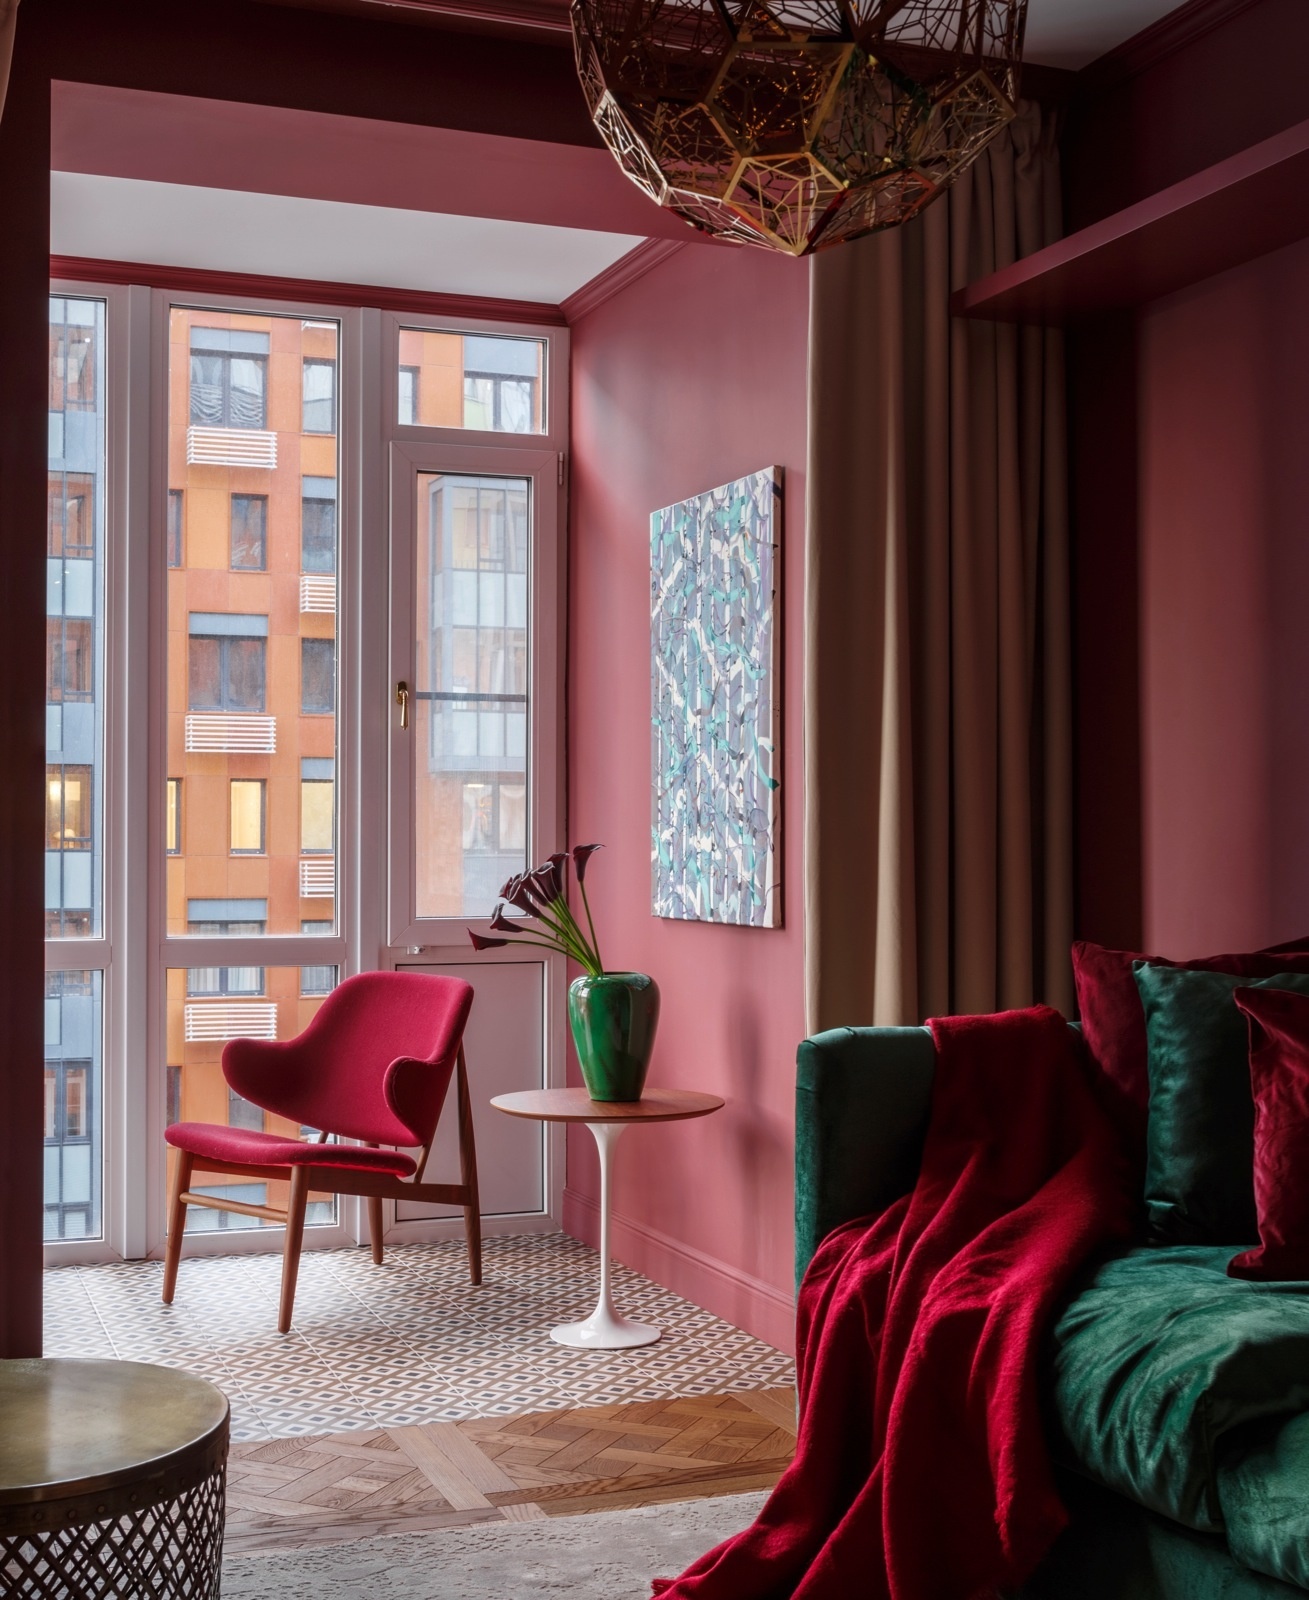 Màu đỏ trầm ấm được sử dụng để kết nối khu vực từ logia vào phòng khách, thêm vào sắc xanh ngọc lục bảo của sofa và lọ hoa trang trí lại càng thêm thời thượng.